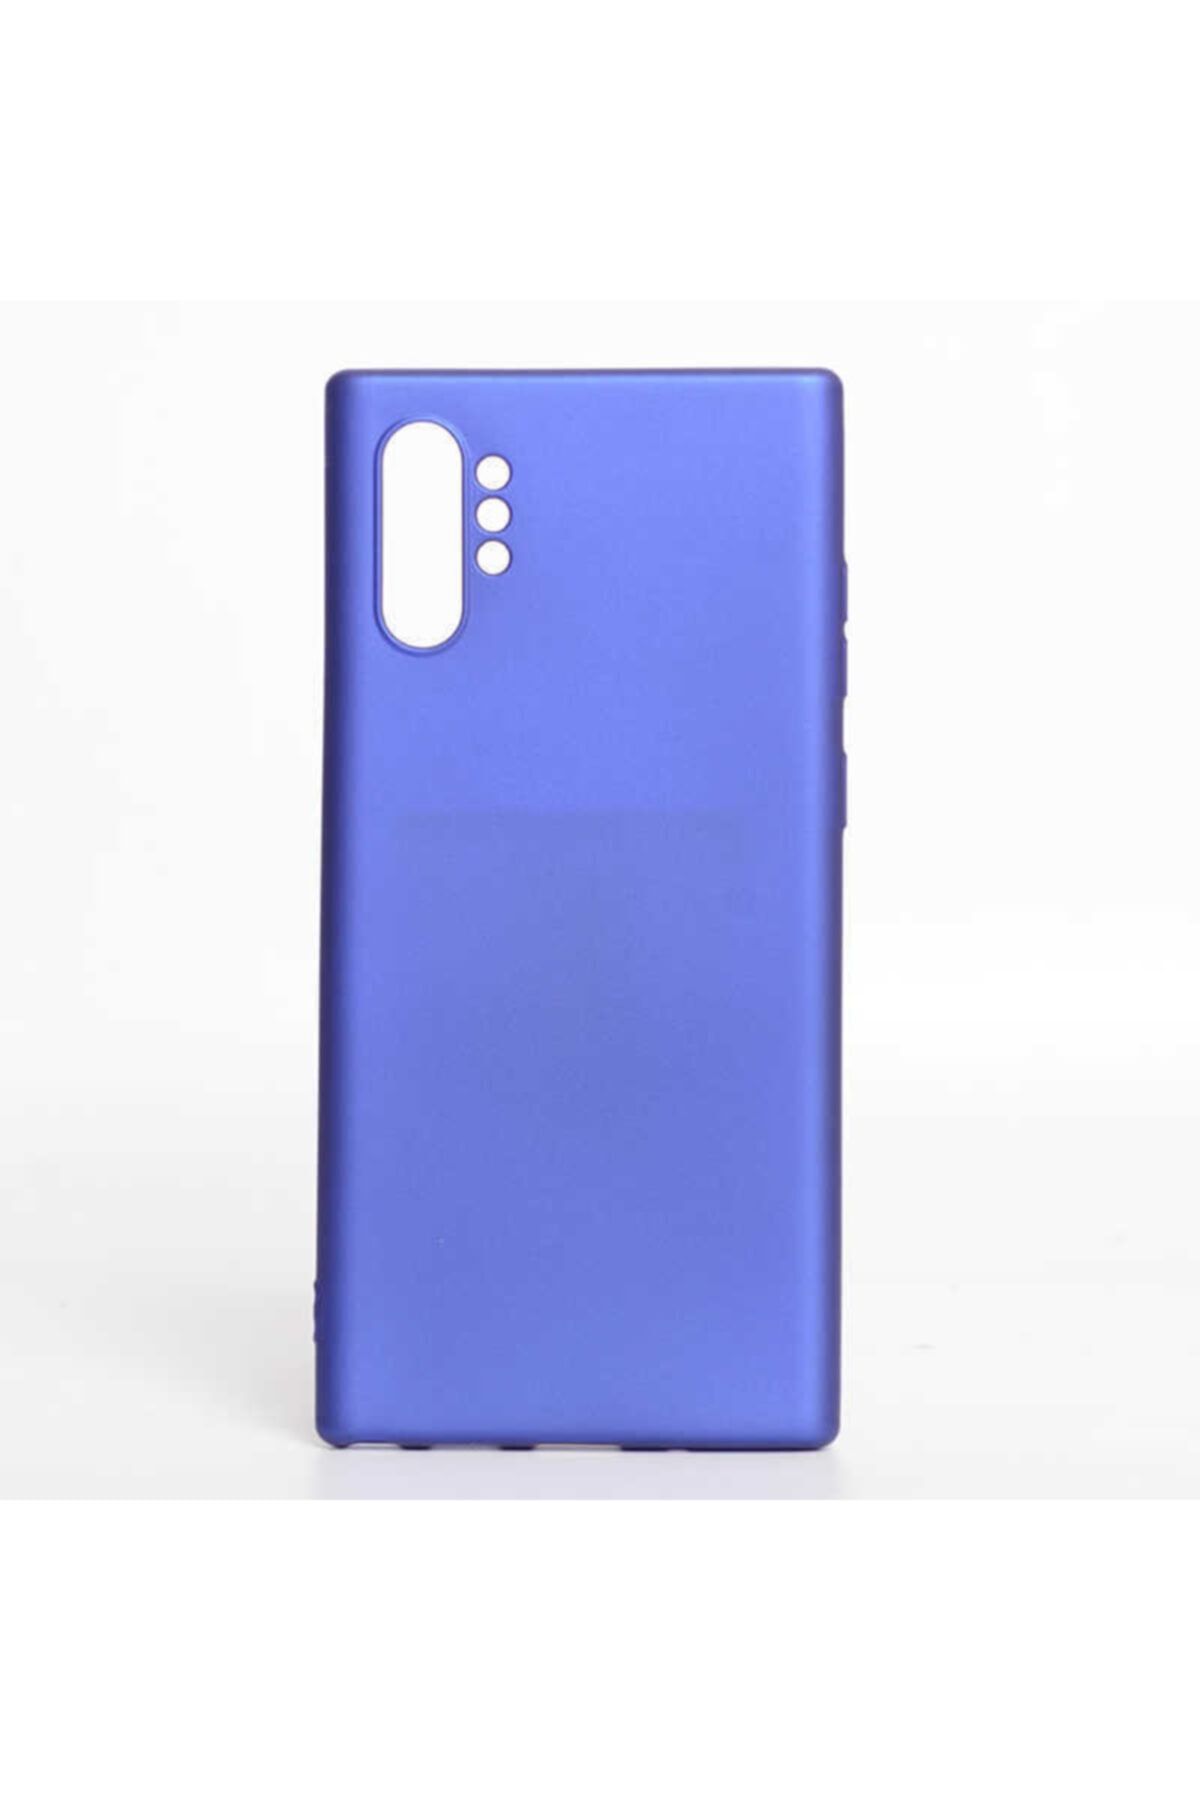 İncisoft Samsung Galaxy Note 10 Plus Kılıf Ultra Ince Silikon Yumuşak Yüzey Arka Kapak Saks Mavi